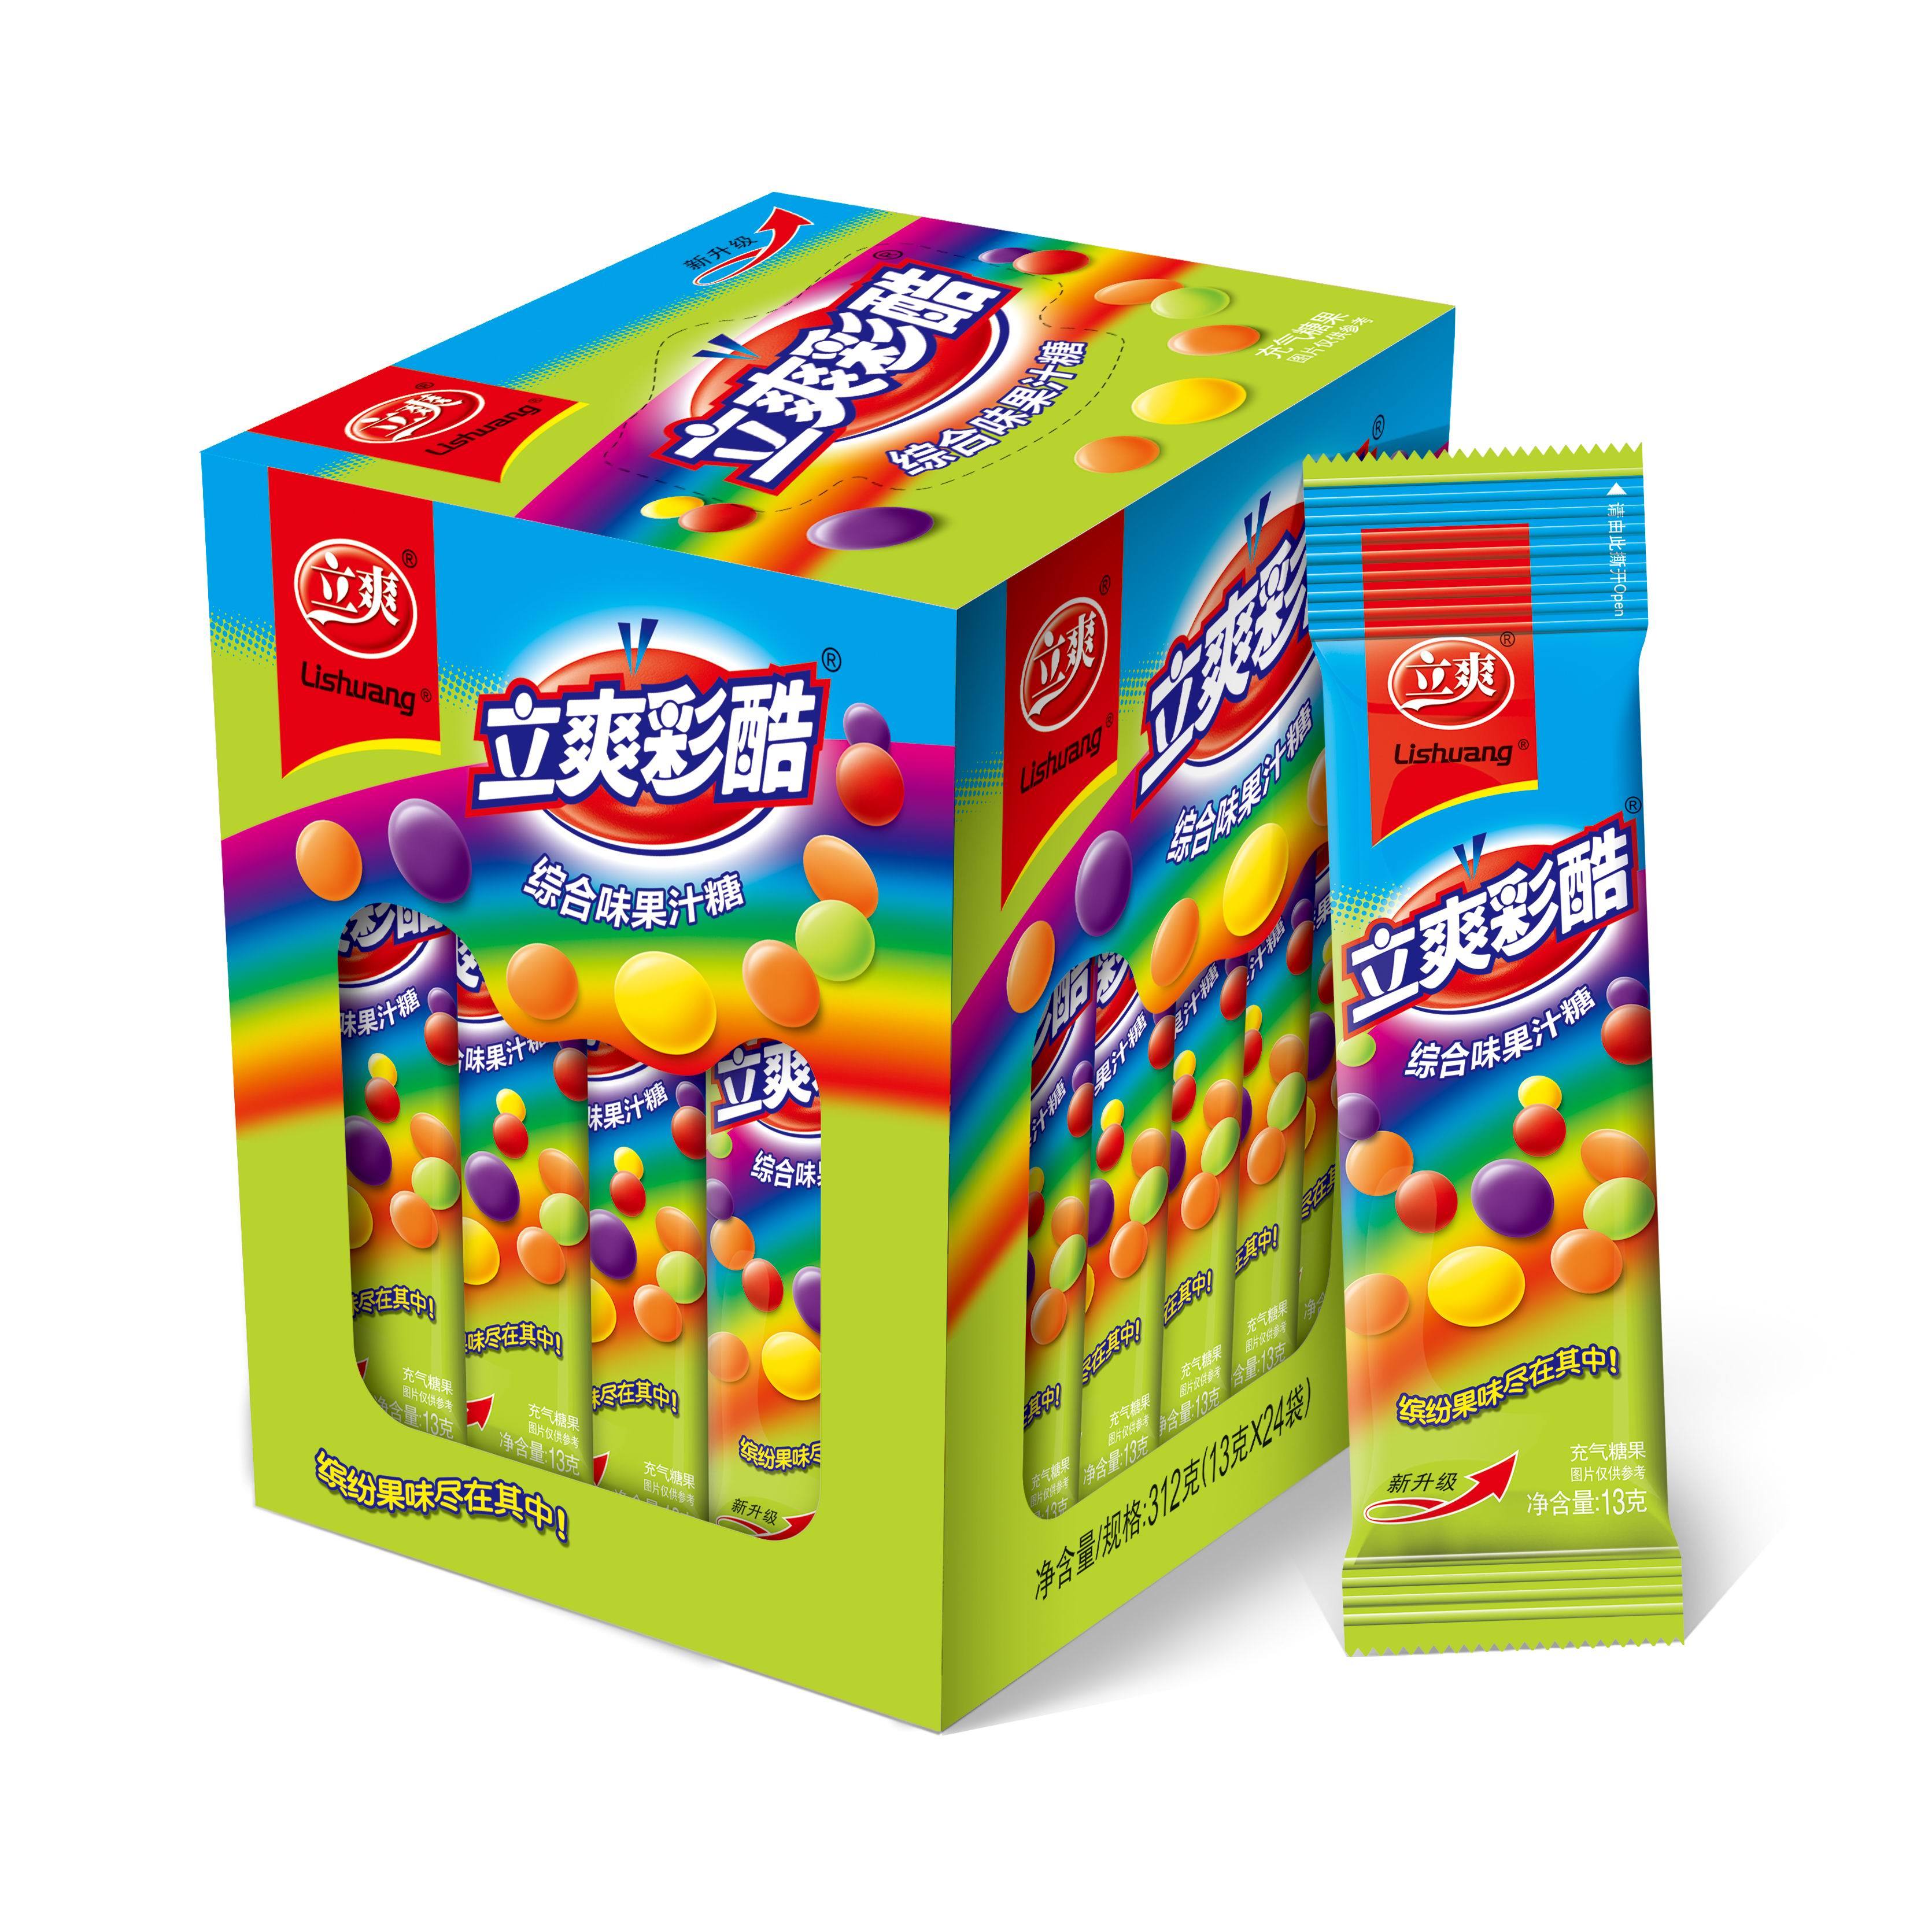 Li Shuang Caiku Comprehensive Flavor Fruit Juice Sugar -13g Comprehensive Flavor